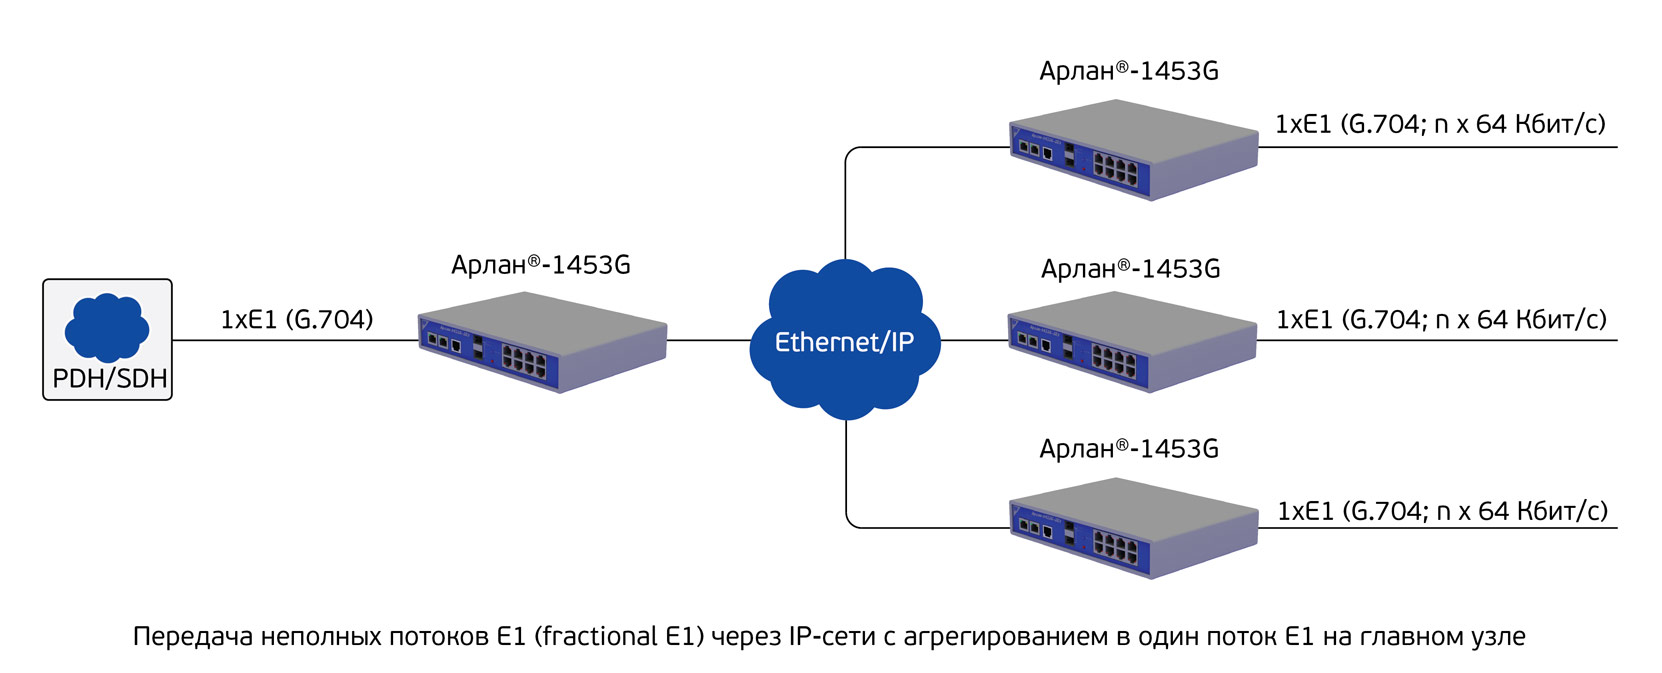 Передача неполных потоков E1 через IP сети